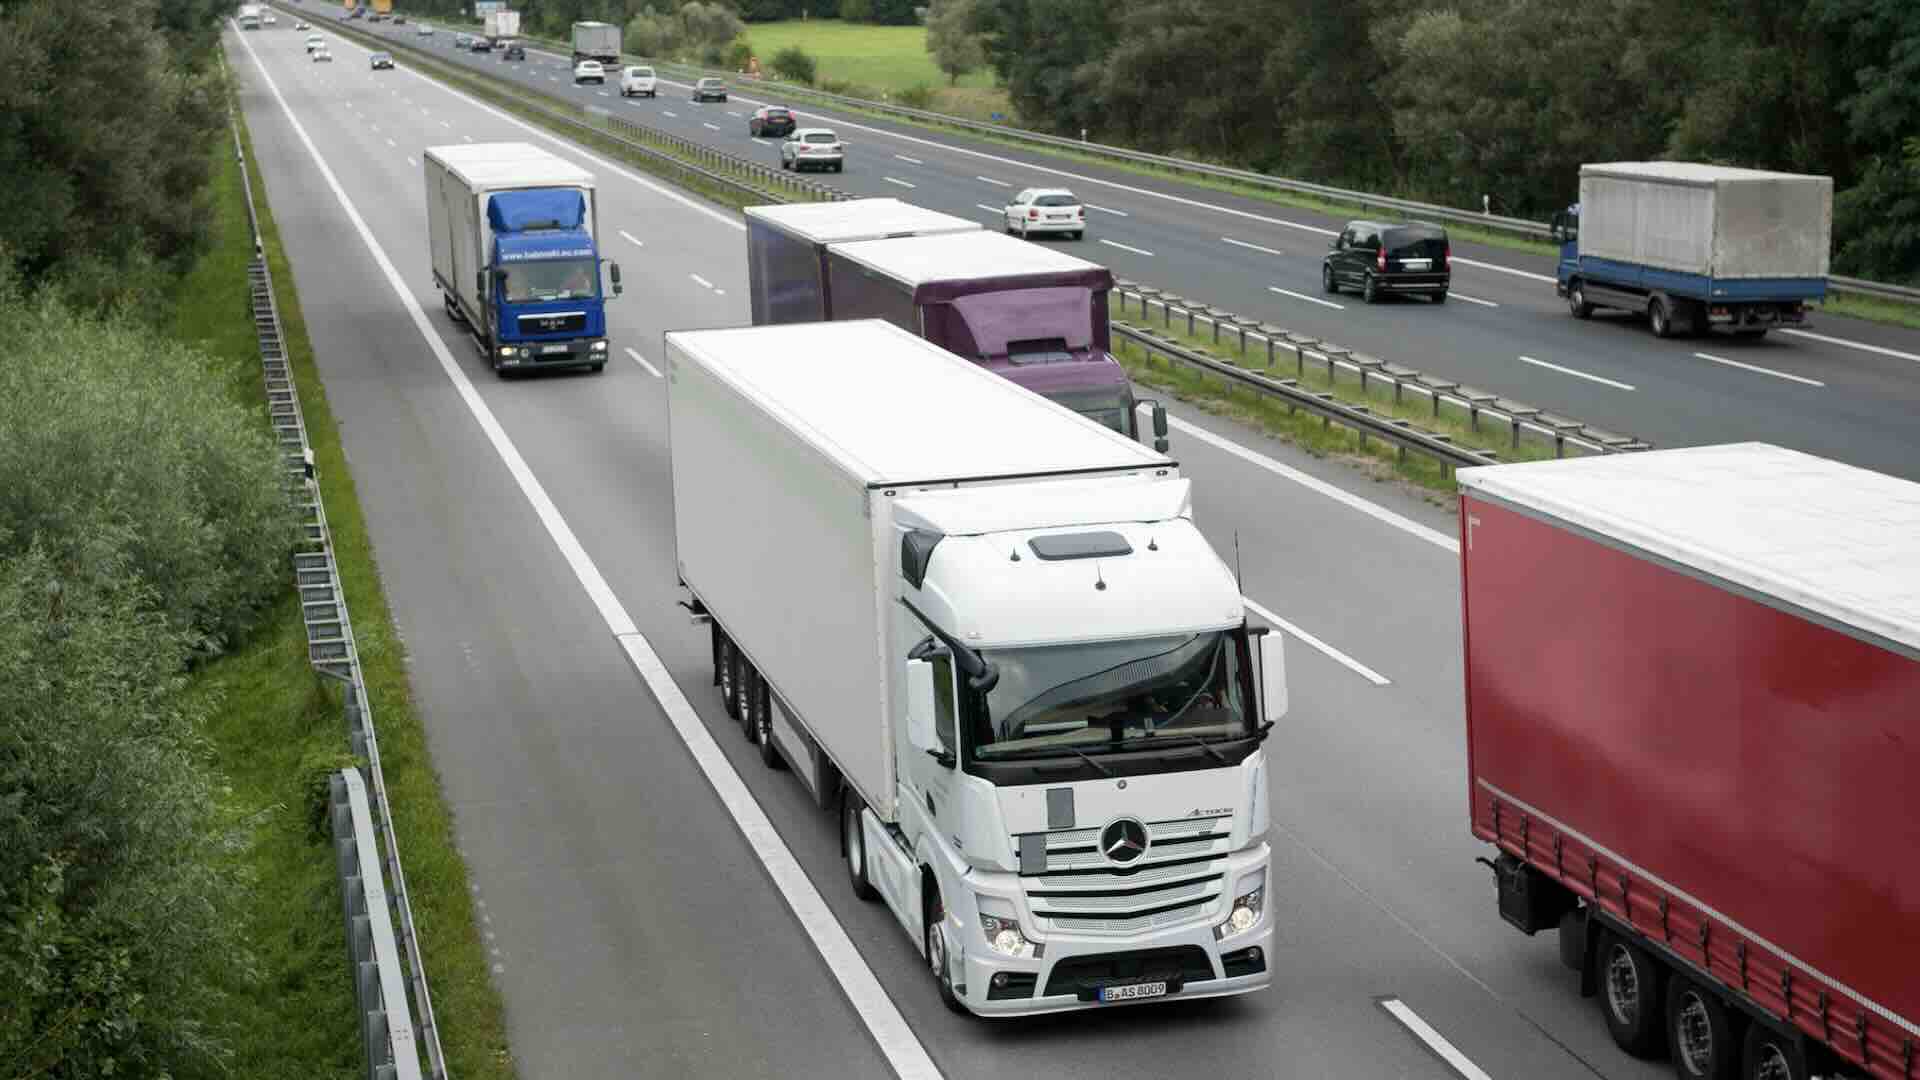 Pedaggi Germania aumenti dal 1 luglio 2024 per i camion